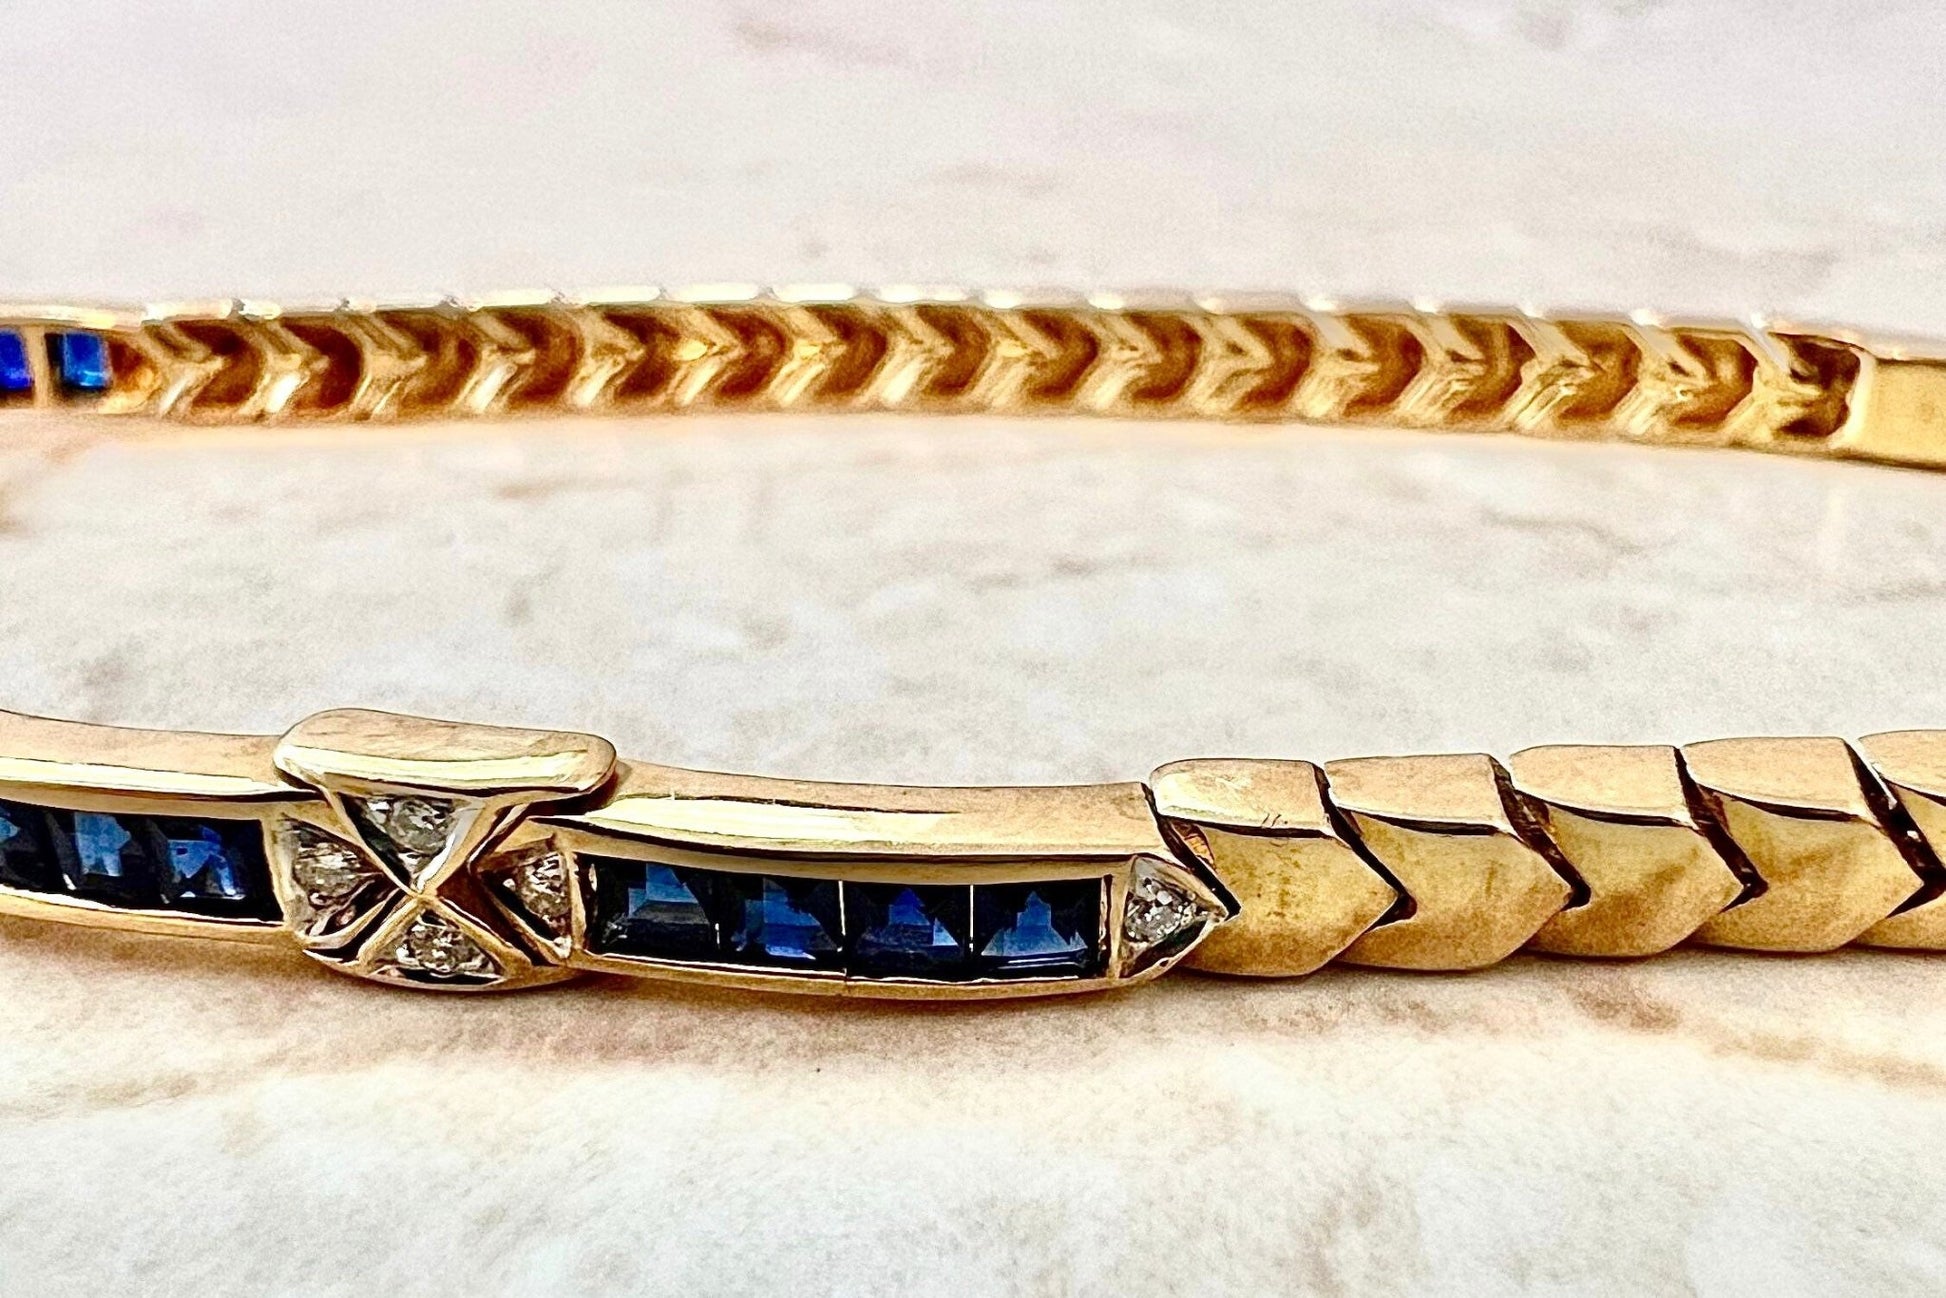 Vintage 18K Sapphire And Diamond Bracelet - 18 Karat Yellow Gold Sapphire Bracelet - September Birthstone - Line Bracelet -Best Gift For Her